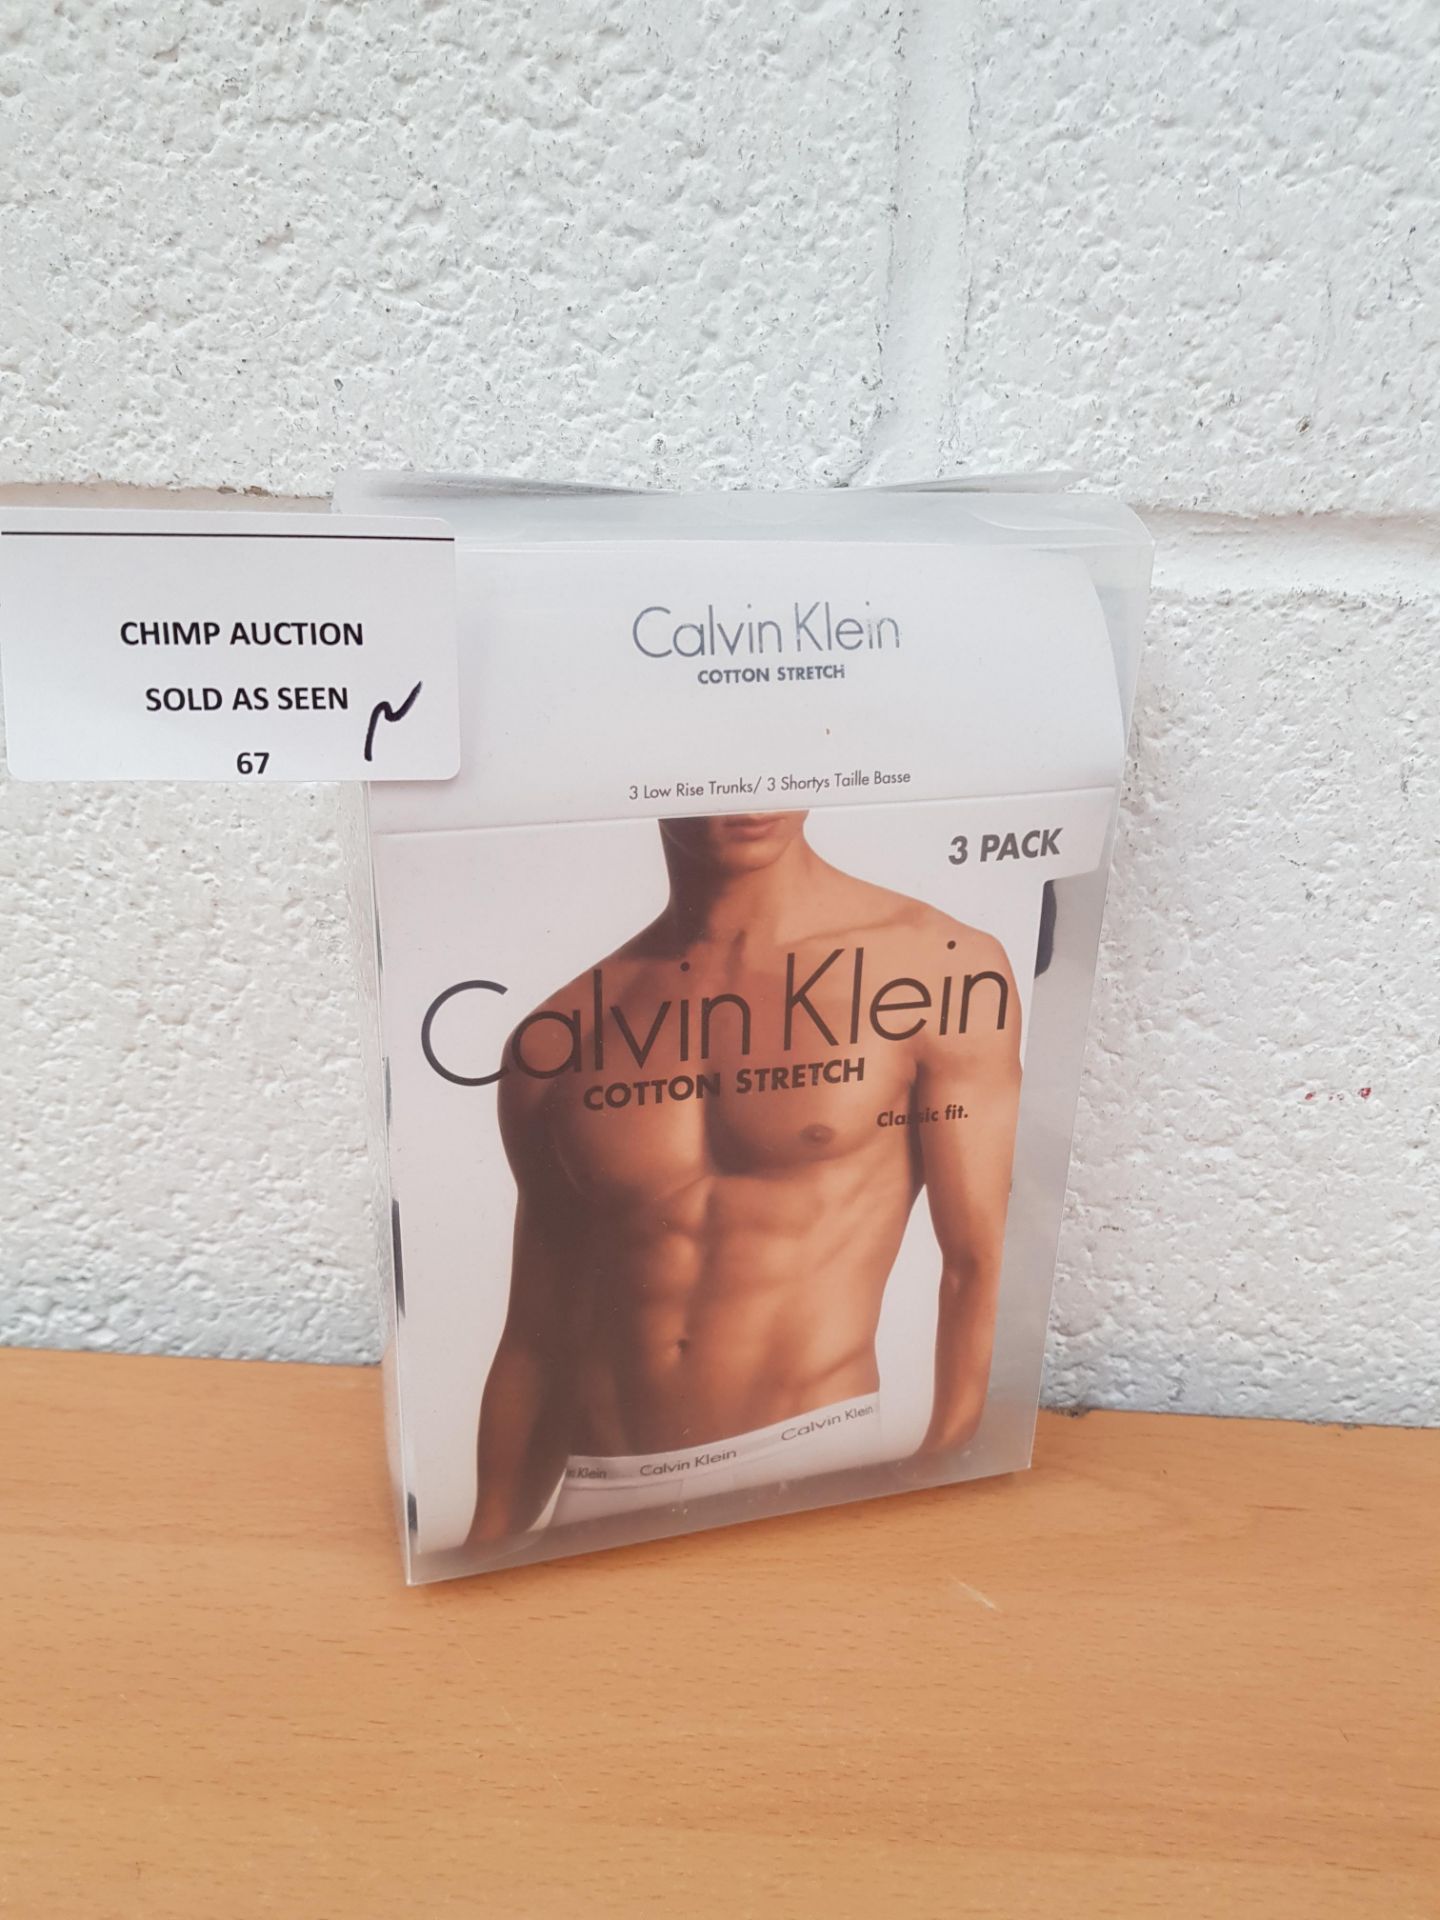 Brand new Calvin Klein Cotton Stretch Men's Briefs 3 pack Size S